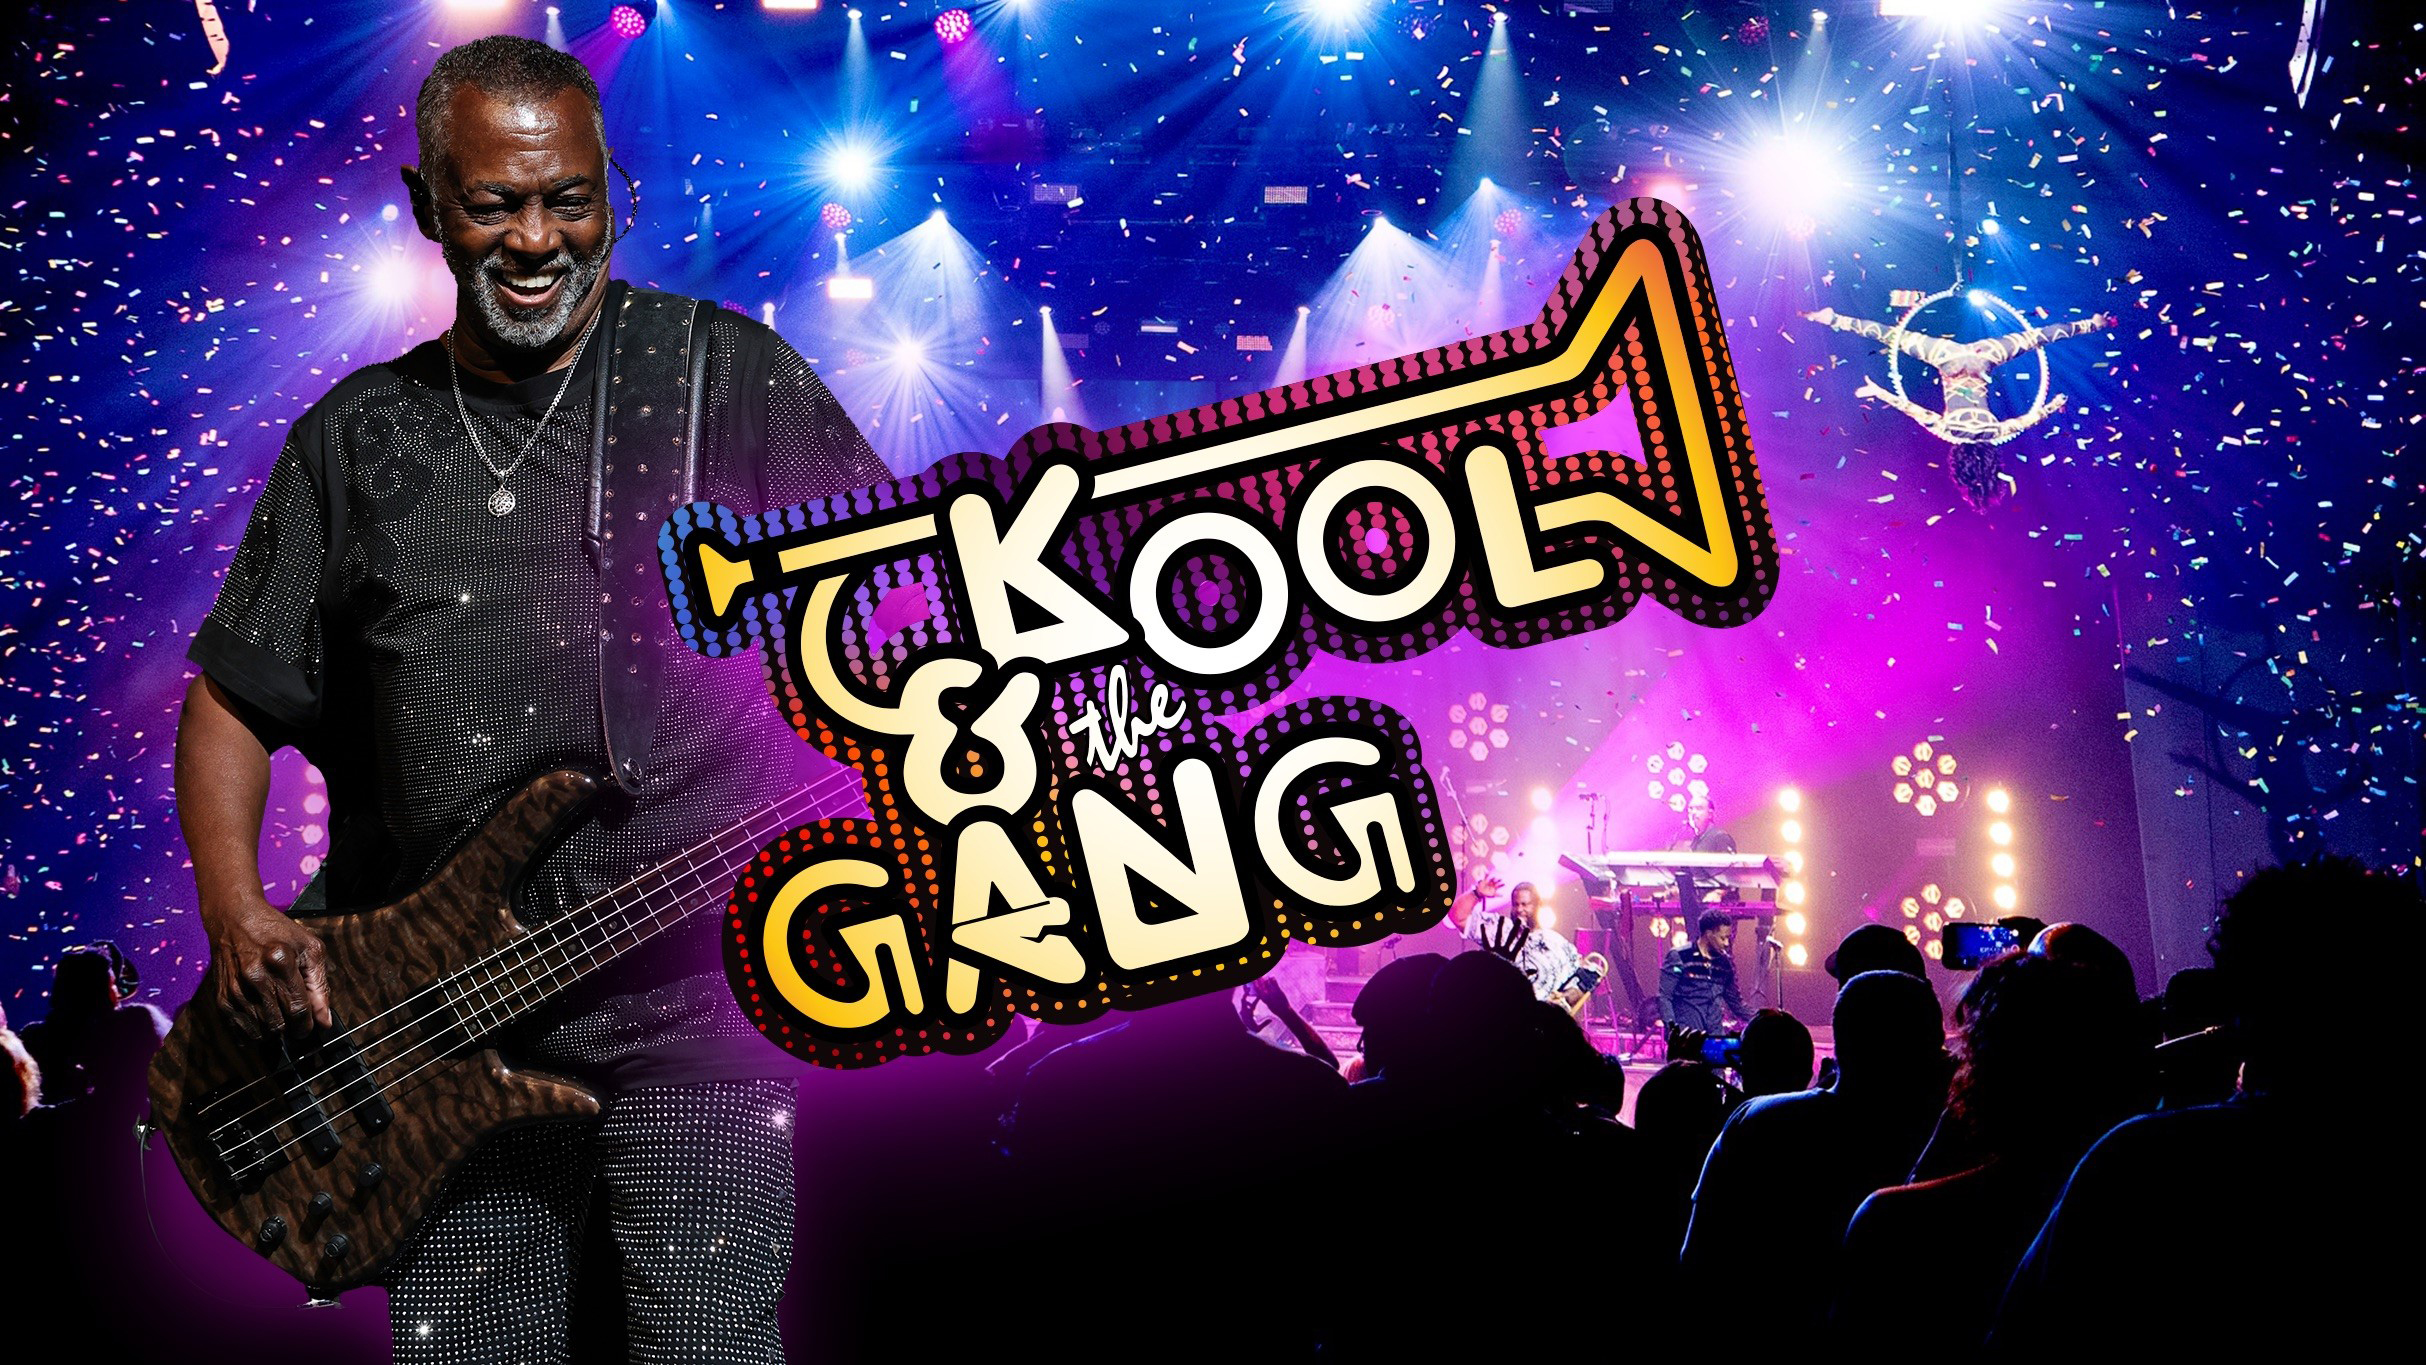 Kool & the Gang